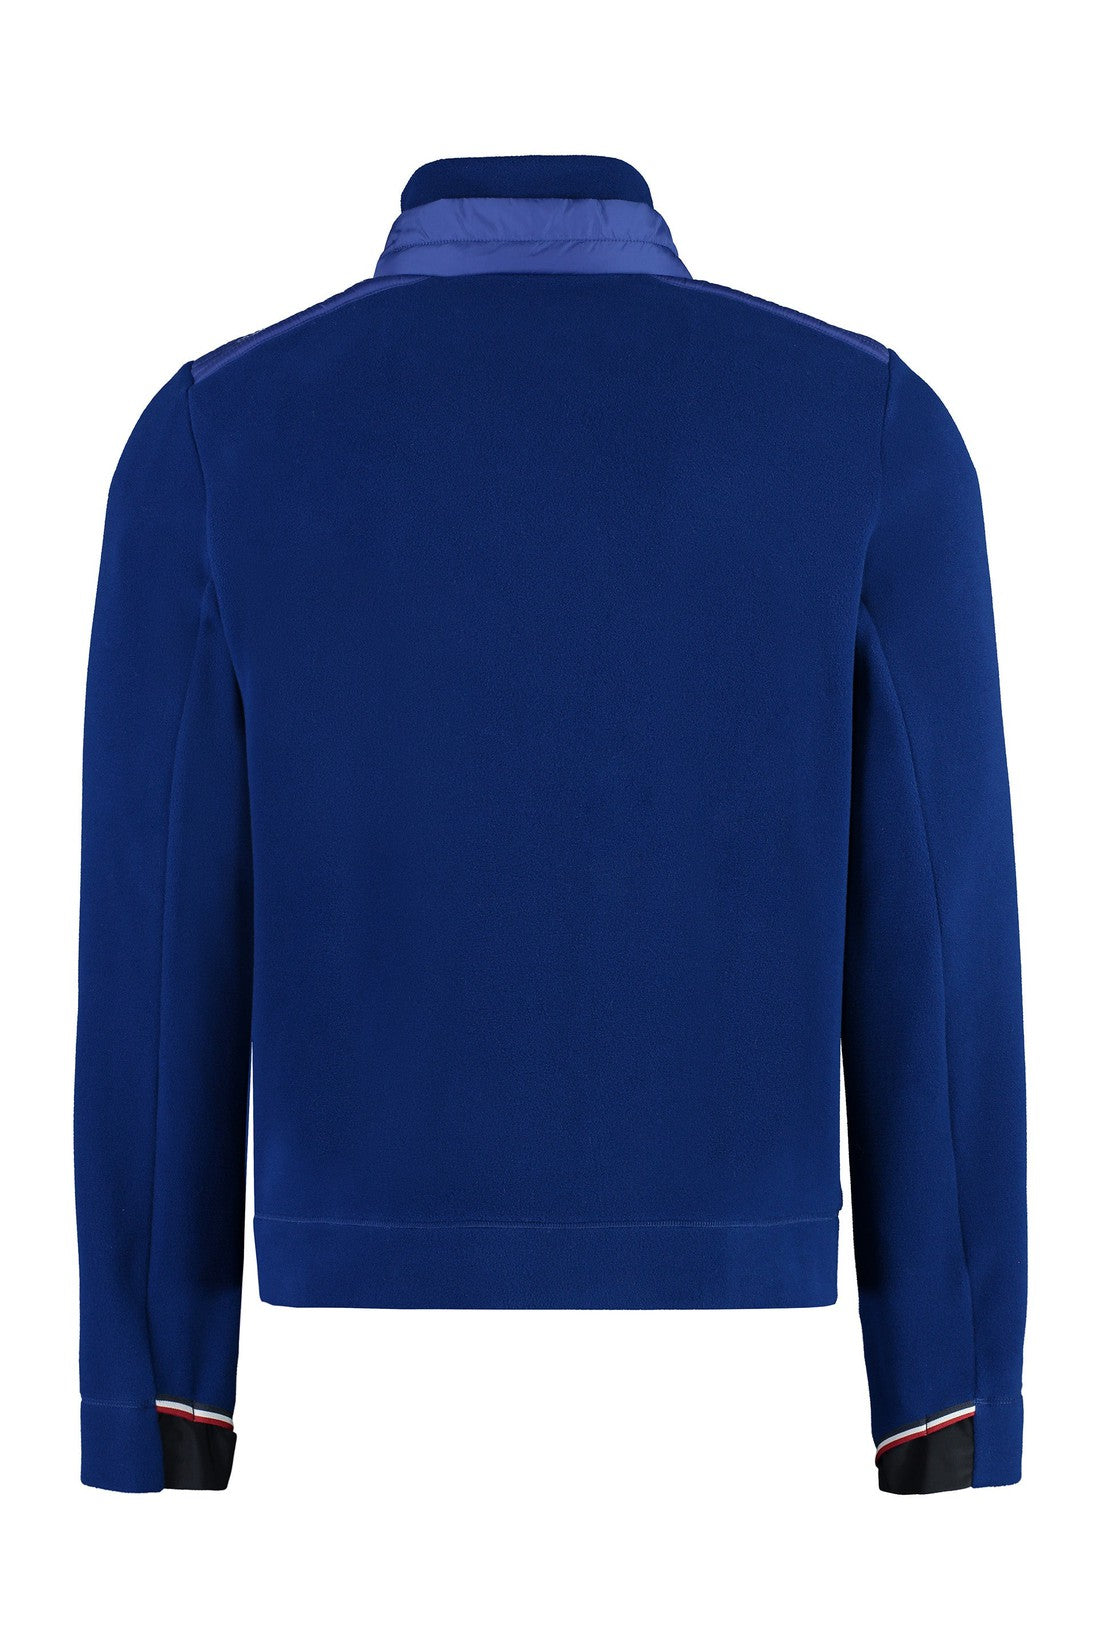 Moncler Grenoble-OUTLET-SALE-Fleece sweatshirt-ARCHIVIST